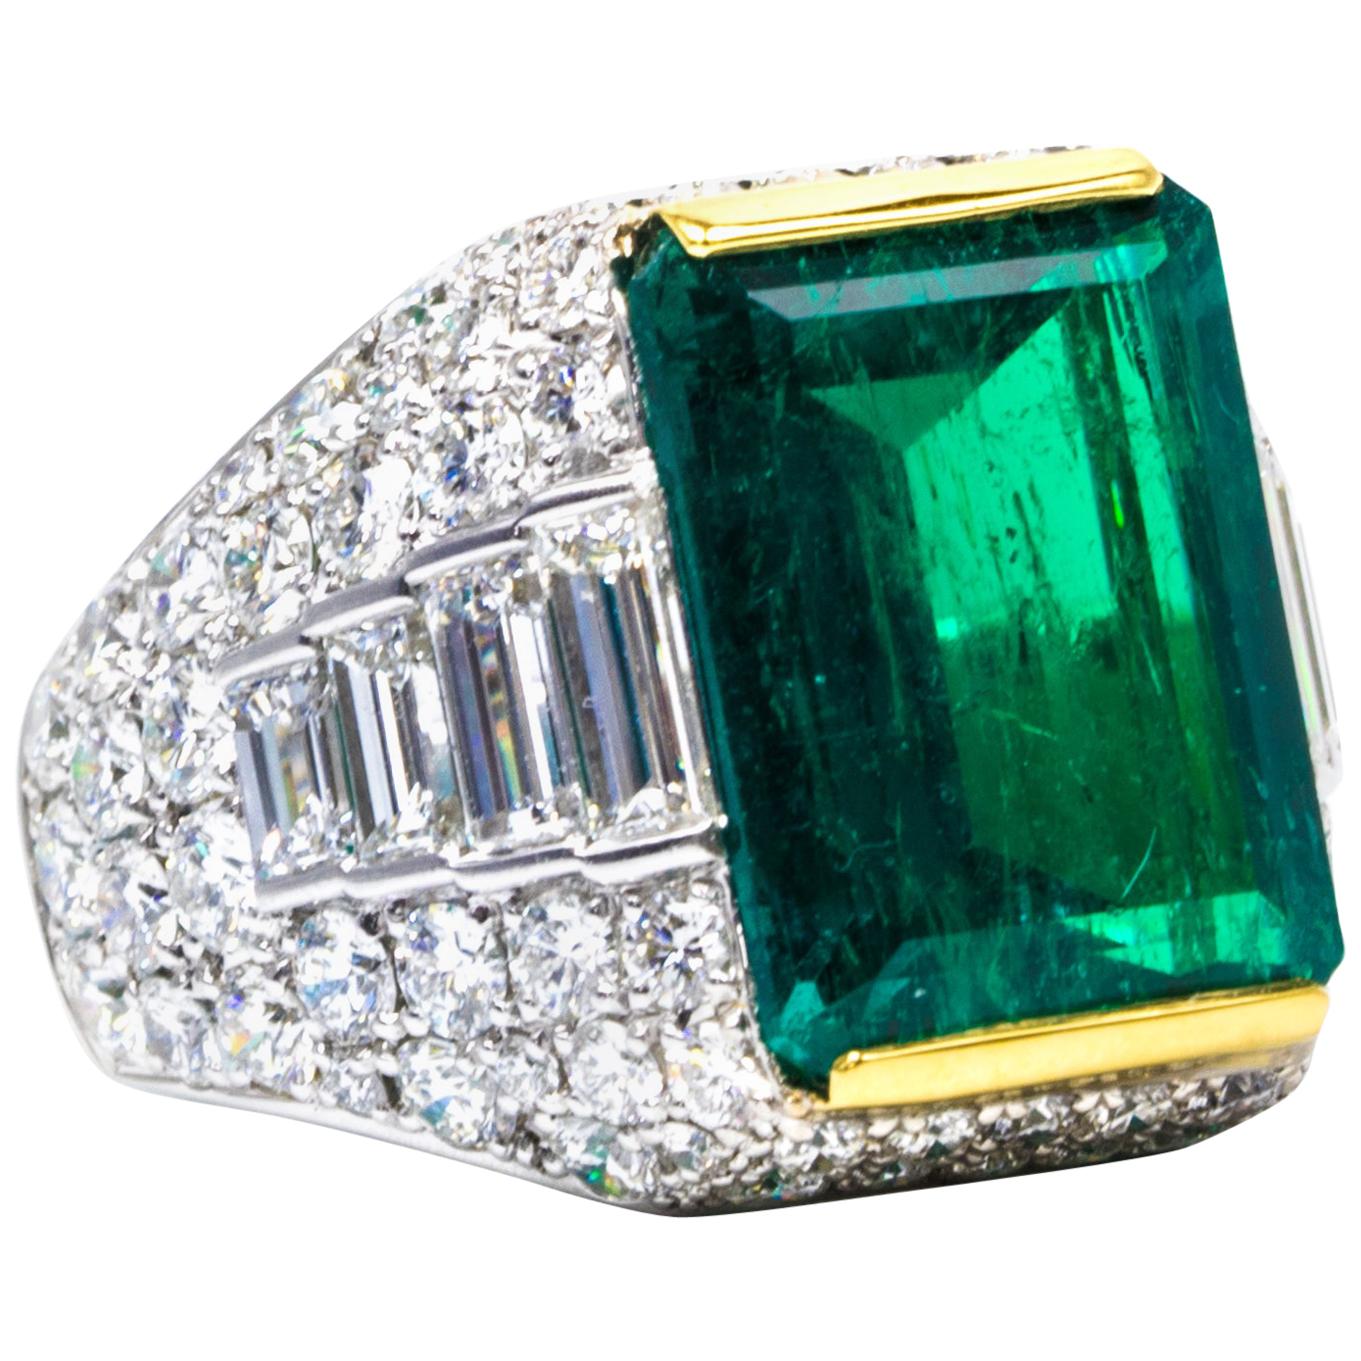 6.59 Carat Natural Emerald Diamond Ring in Platinum